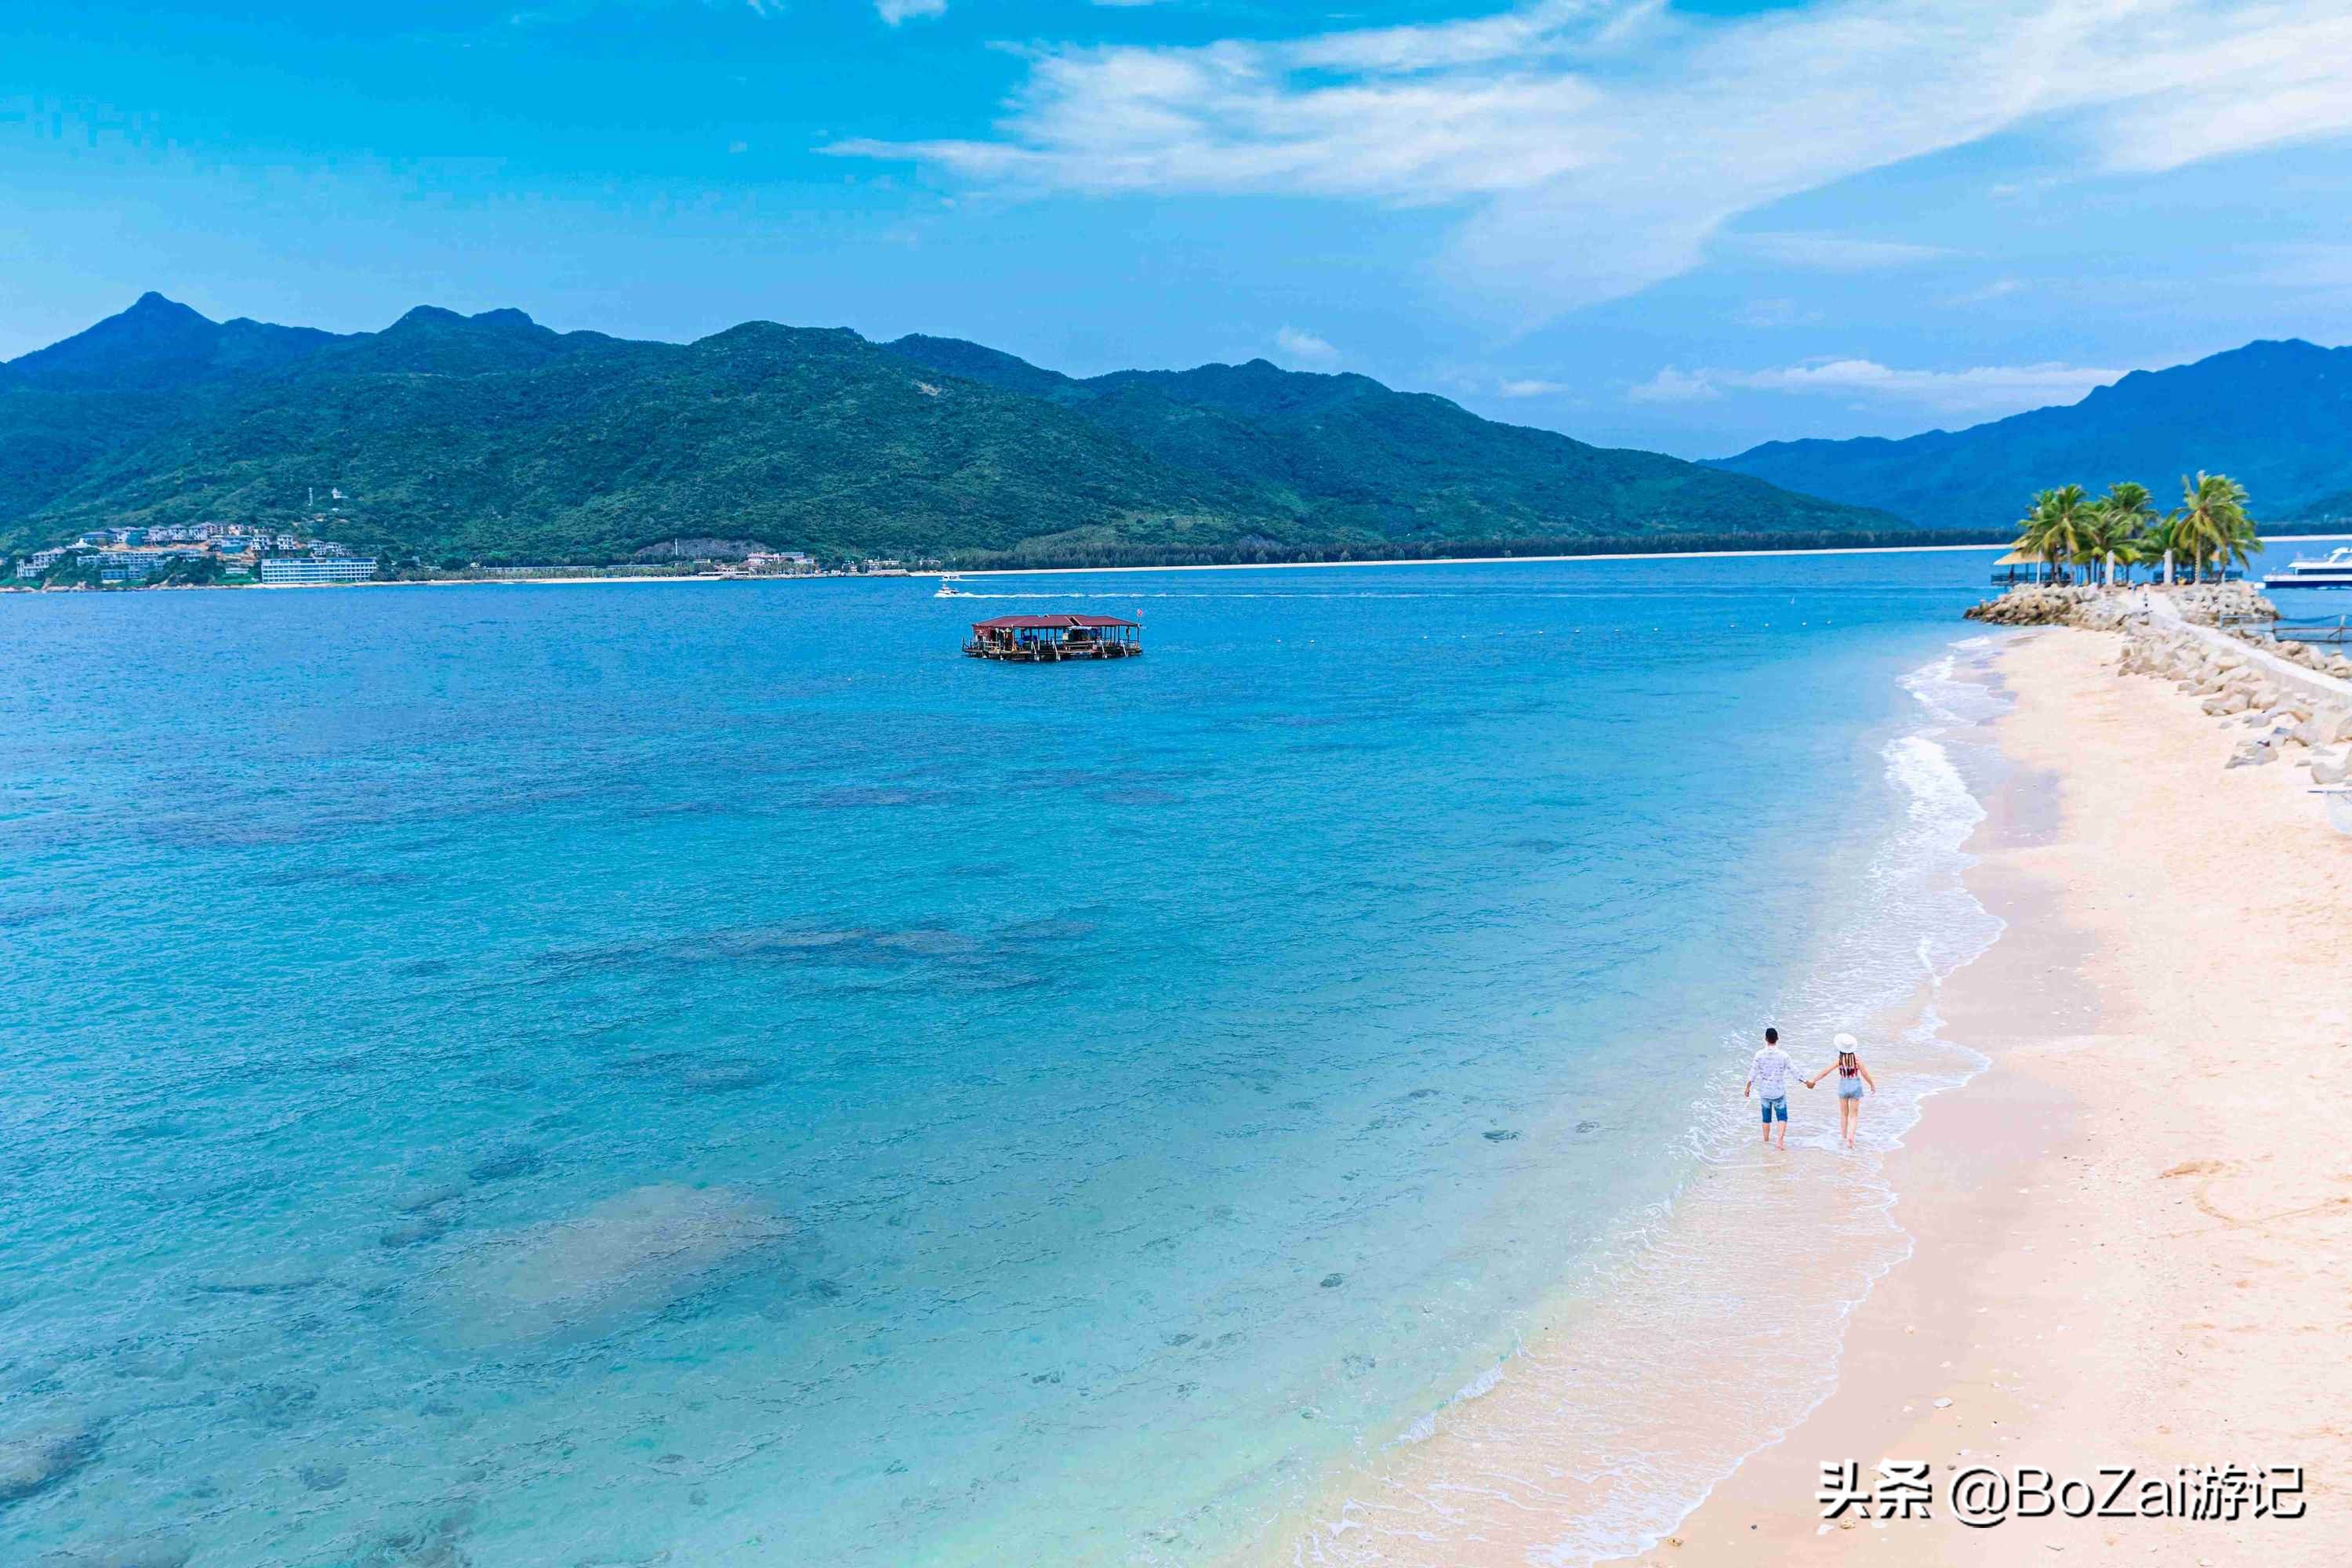 去海南旅游不能错过的10大度假胜地,你去过几个?最爱哪个景点?